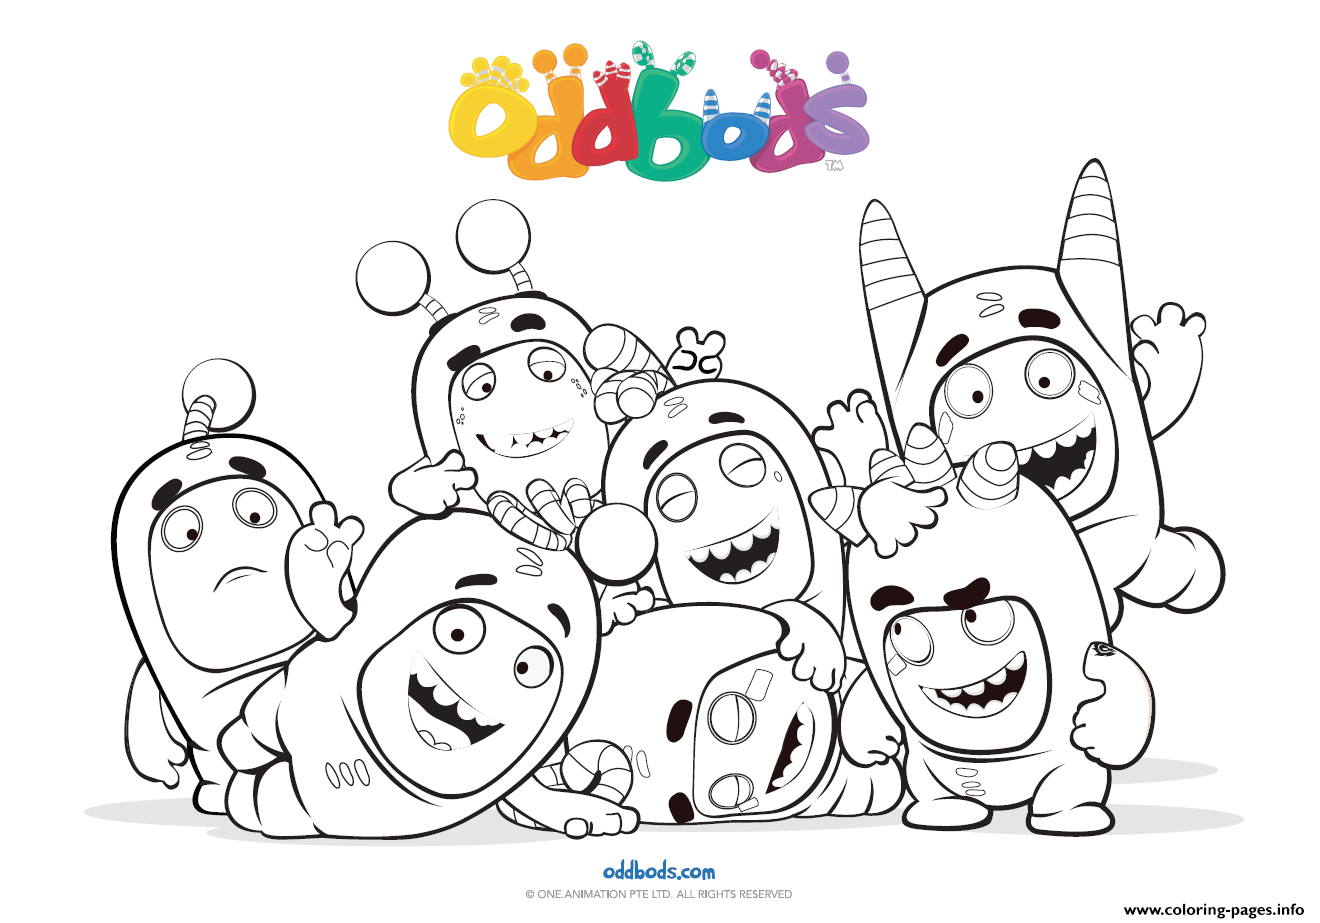 Oddbods Fun Time Kids coloring